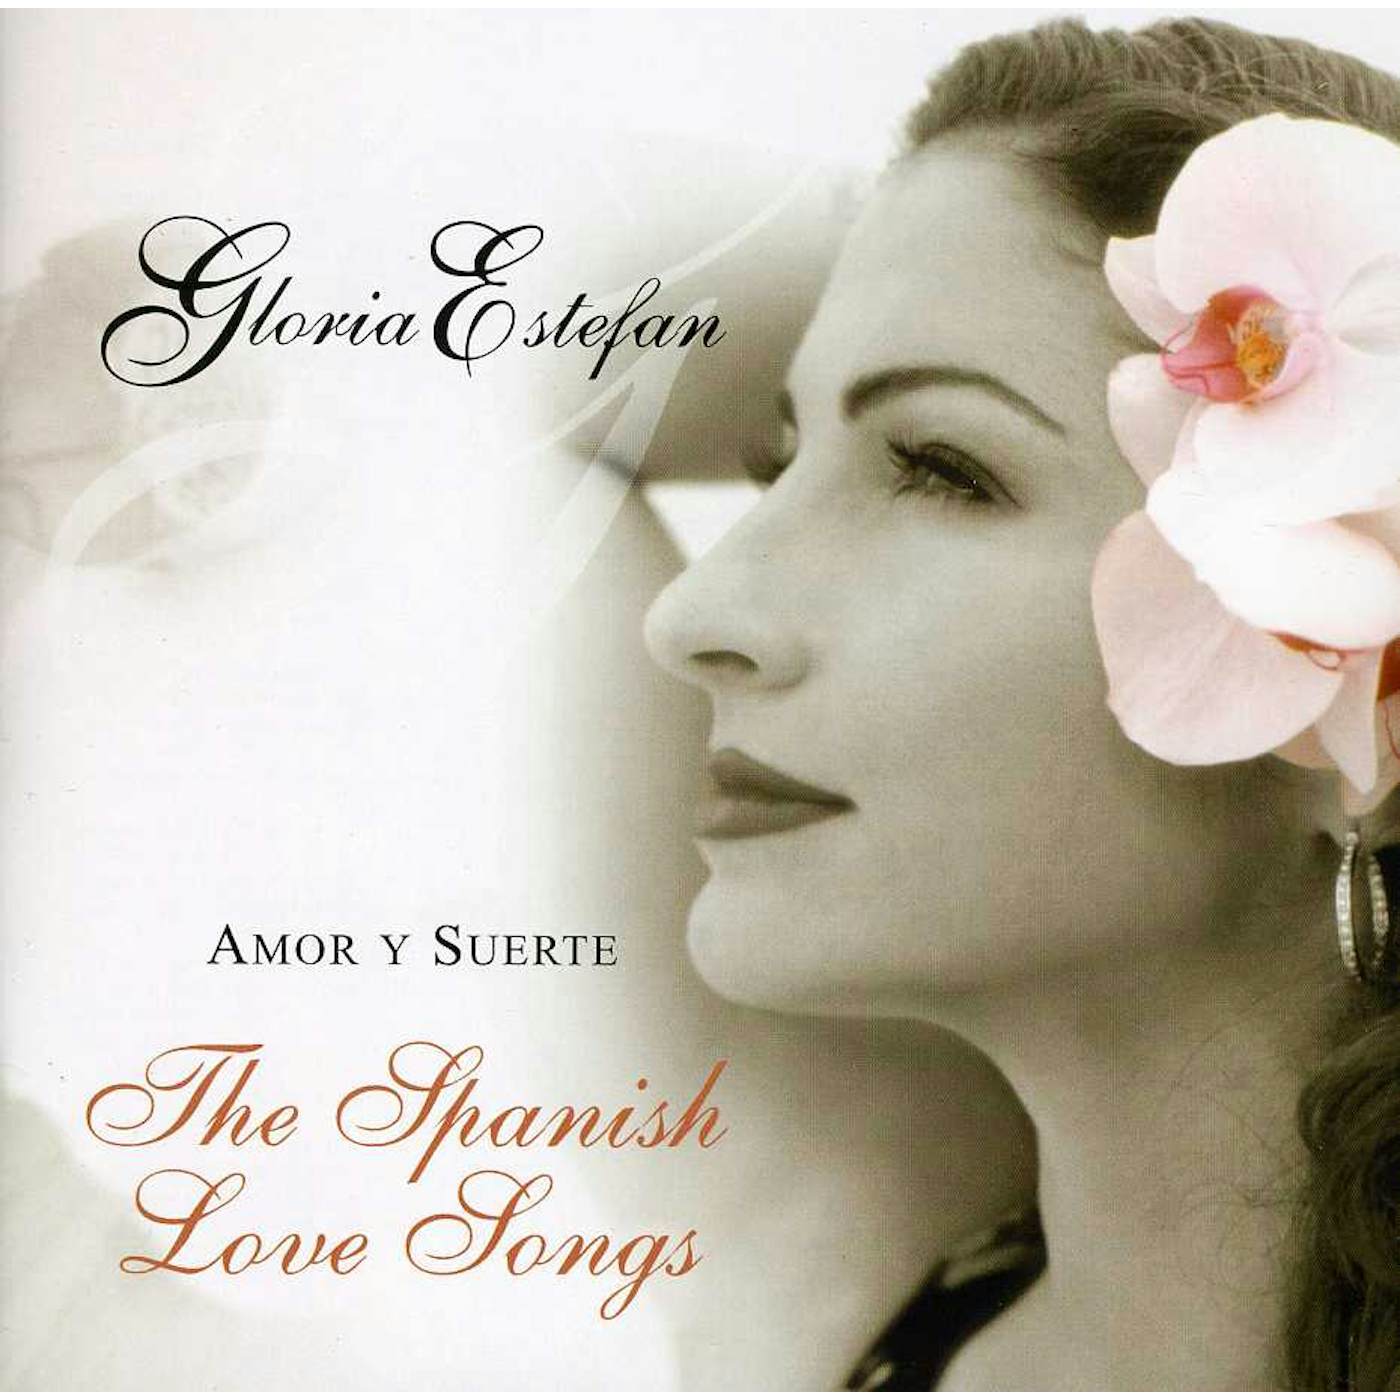 Gloria Estefan AMOR Y SUERTE (SPANISH LOVE SONGS) CD